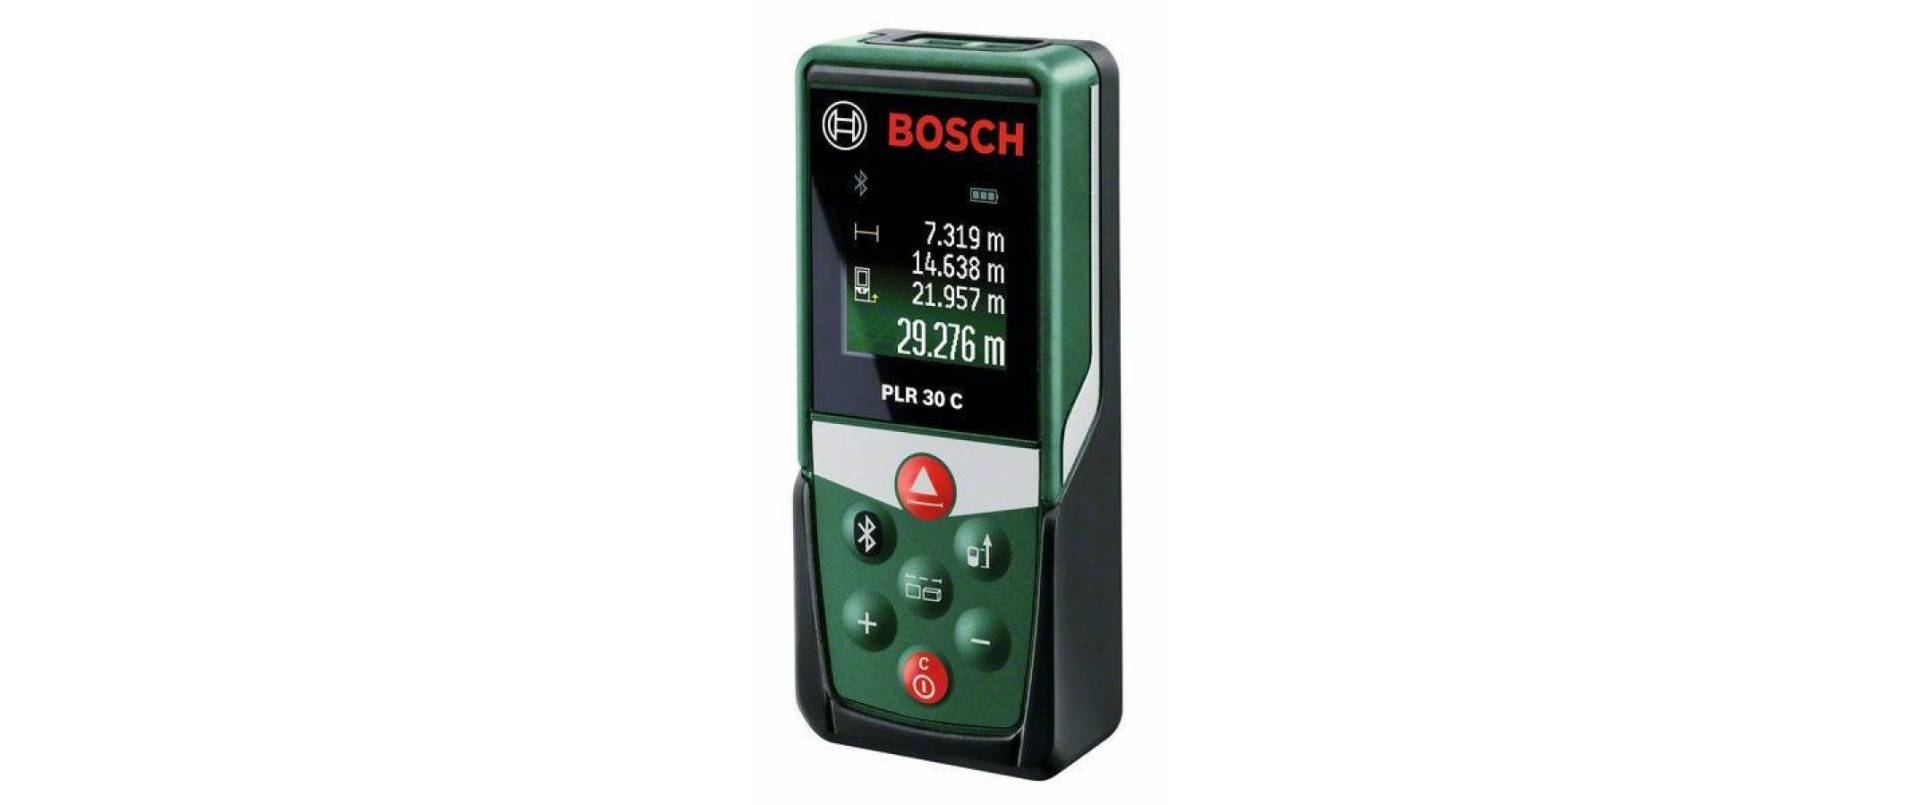 BOSCH Entfernungsmesser »PLR 30 C« von Bosch